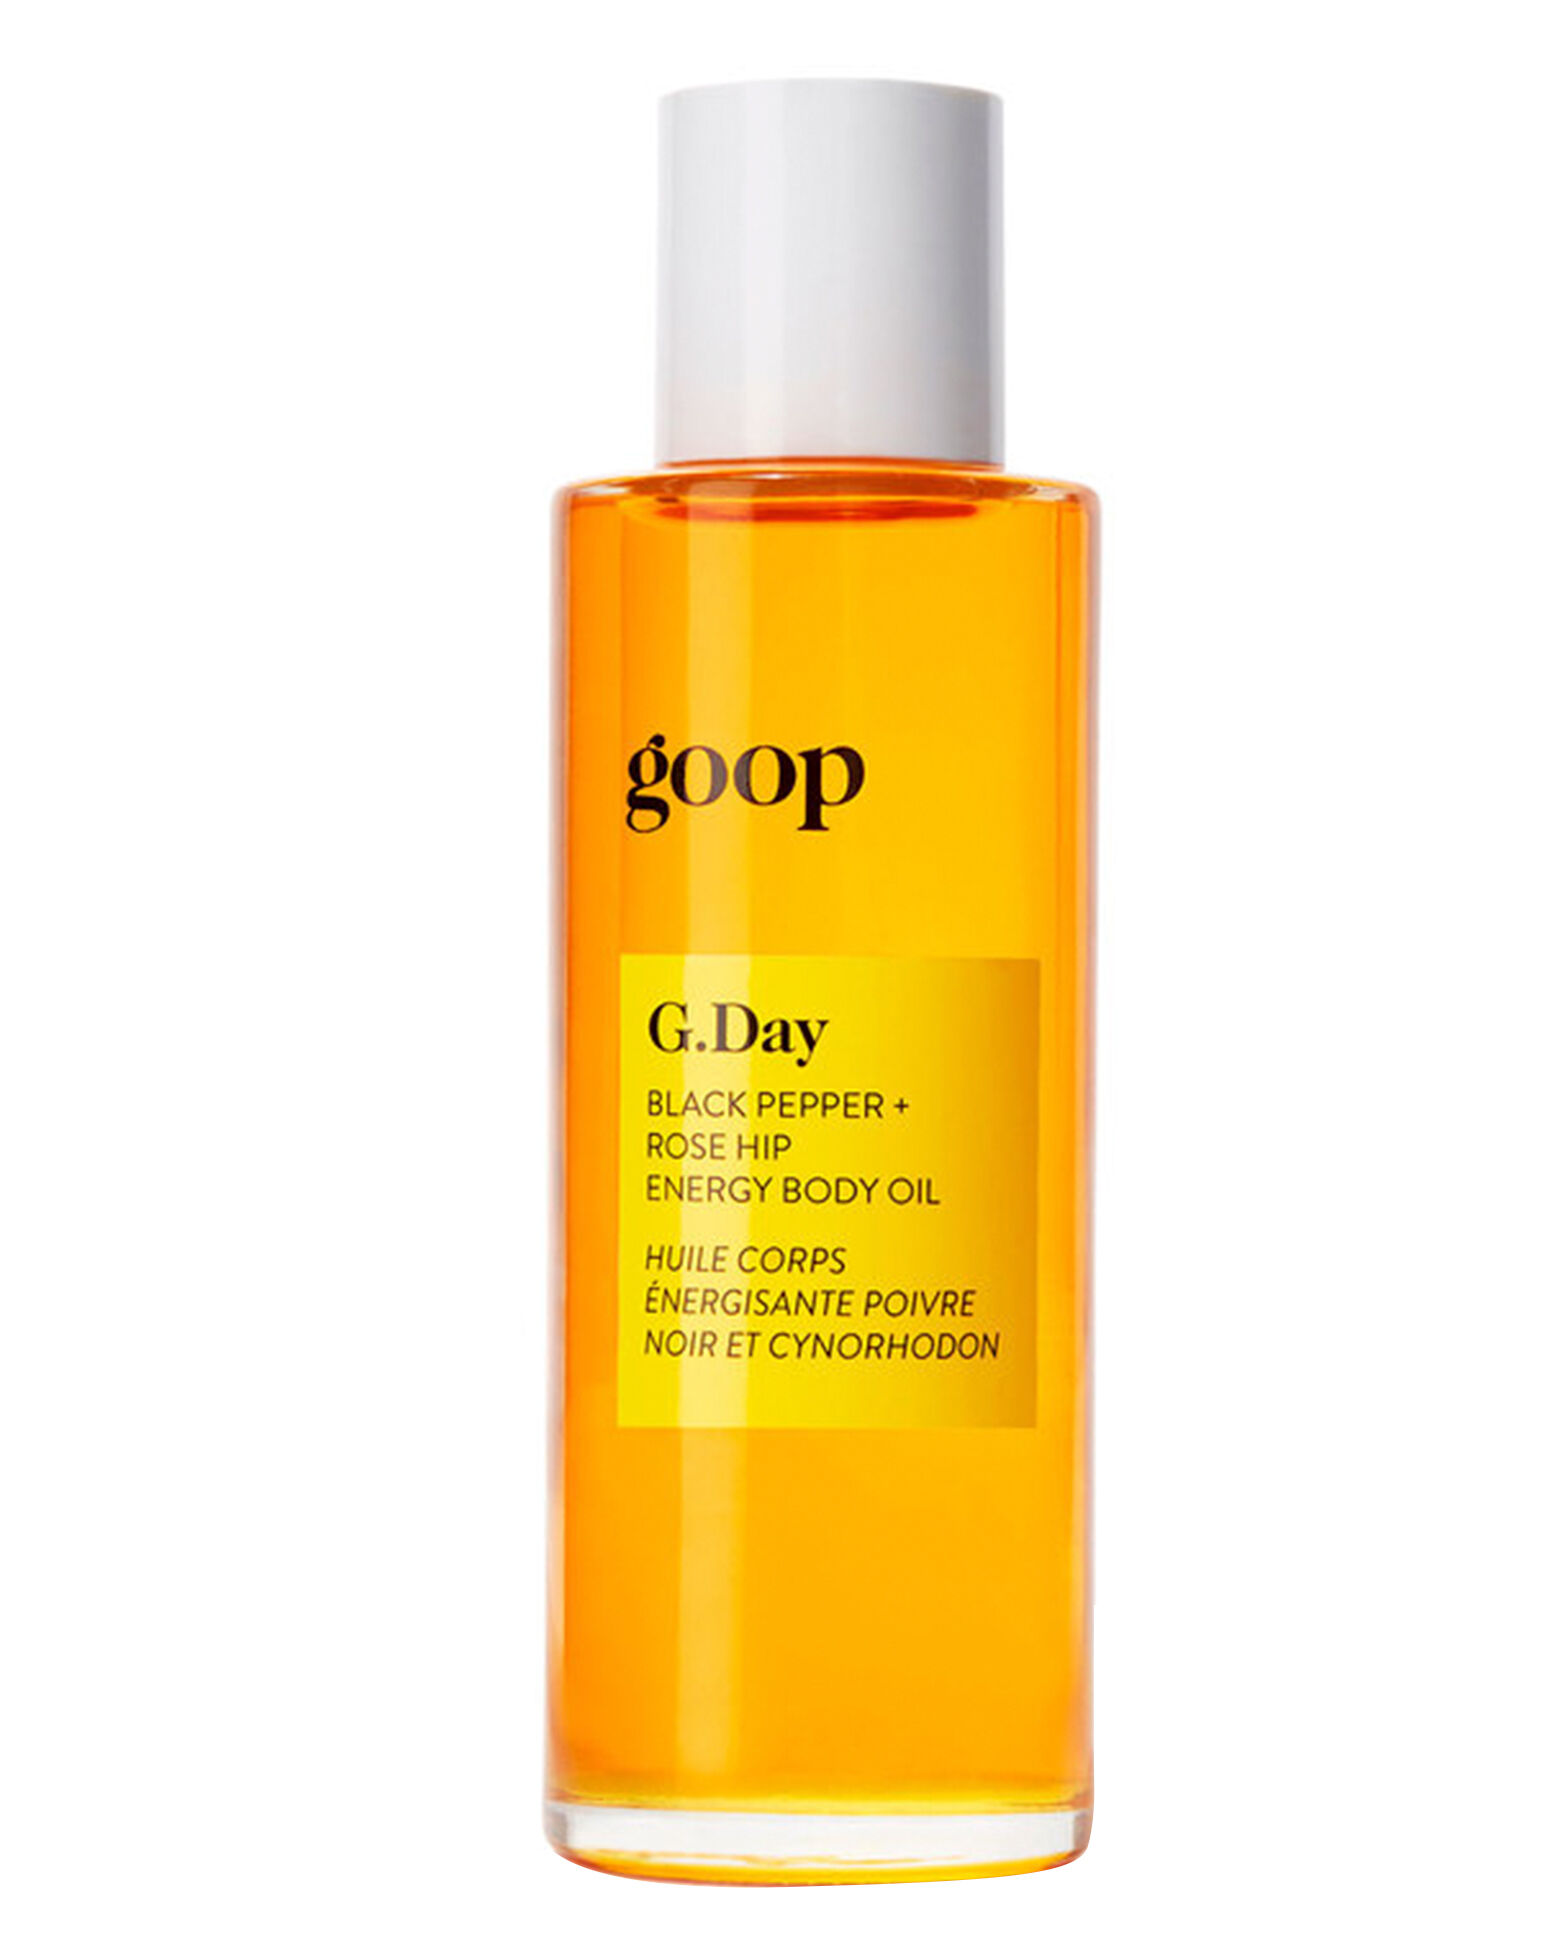 goop - G. Day Black Pepper + Rose Hip Energy Body Oil